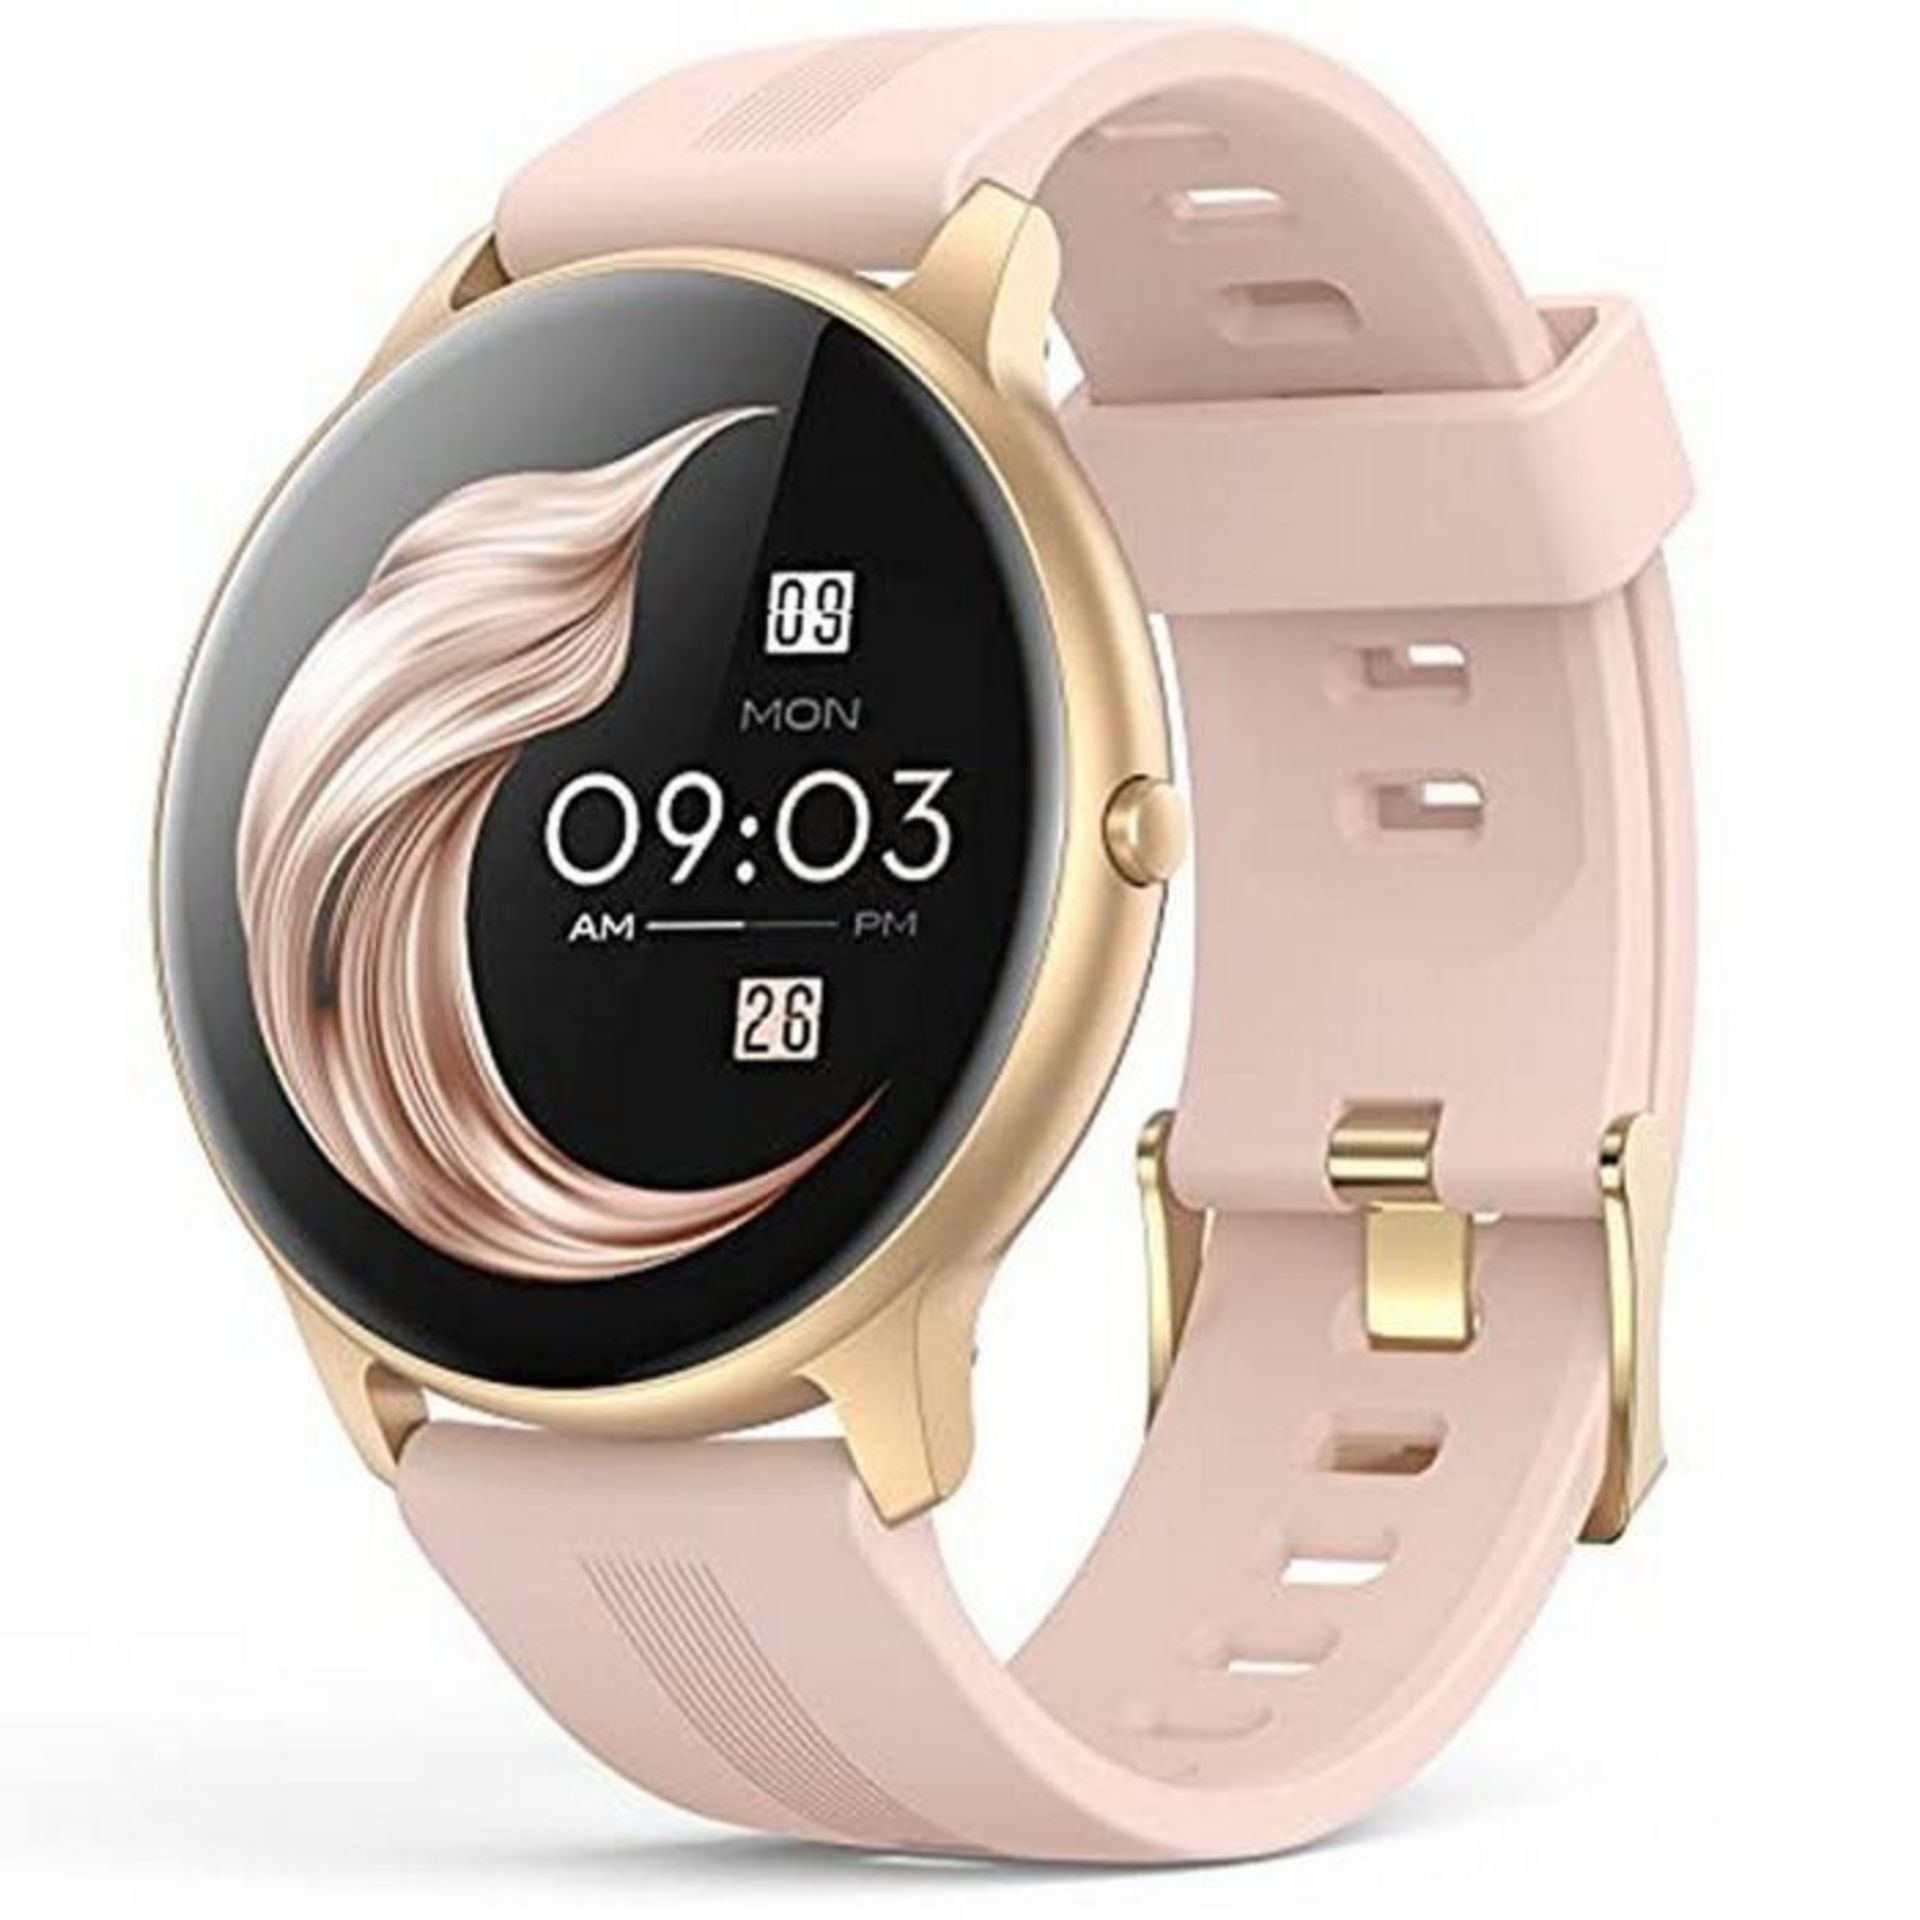 RRP £33.71 AGPTEK Smart Watch for Women - Image 4 of 4